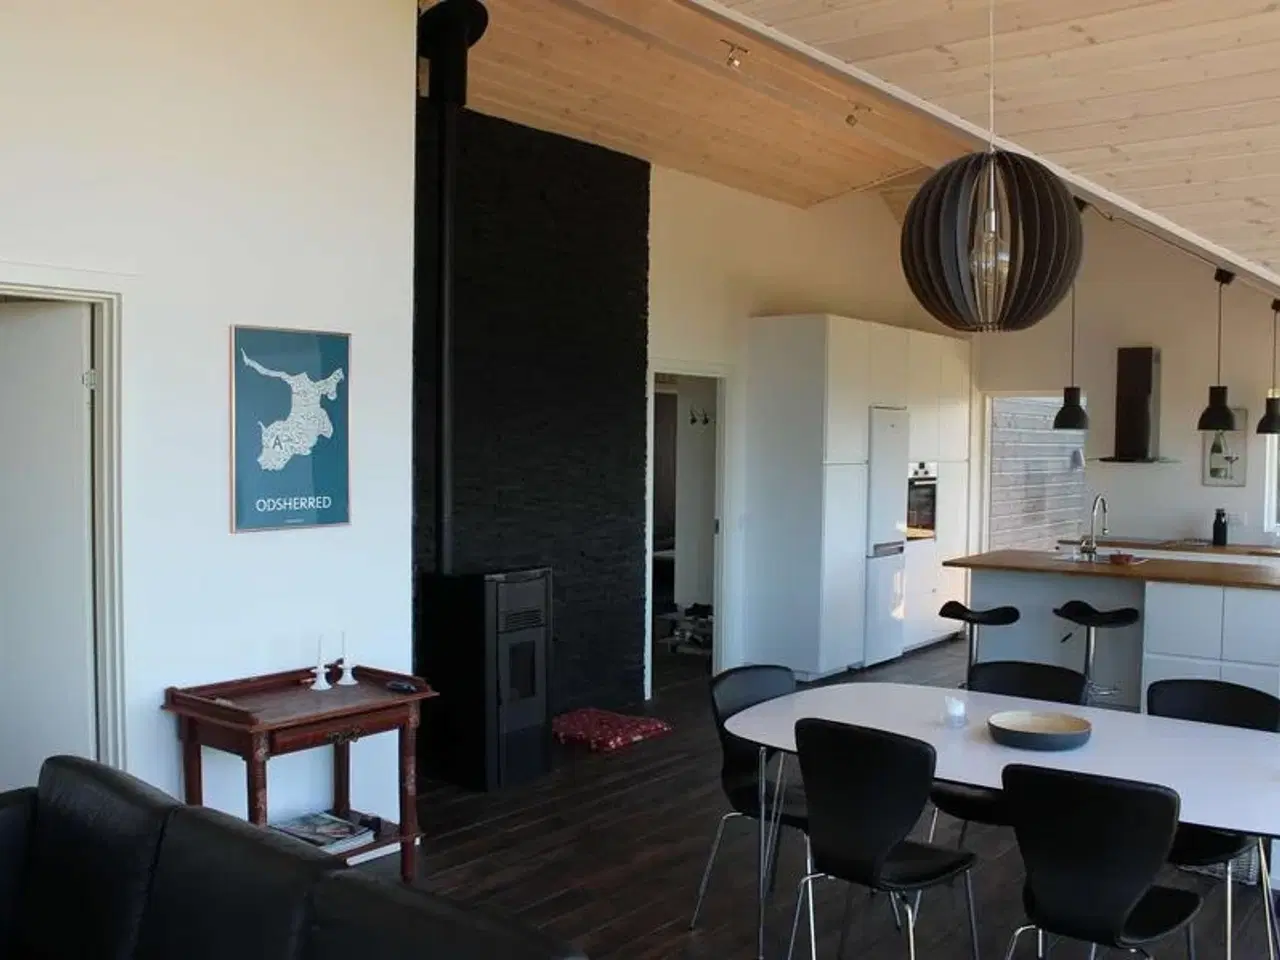 Billede 3 - Nyt, dejligt feriehus for 8 personer udlejes i Veddinge bakker - et af Danmarks smukkeste områder